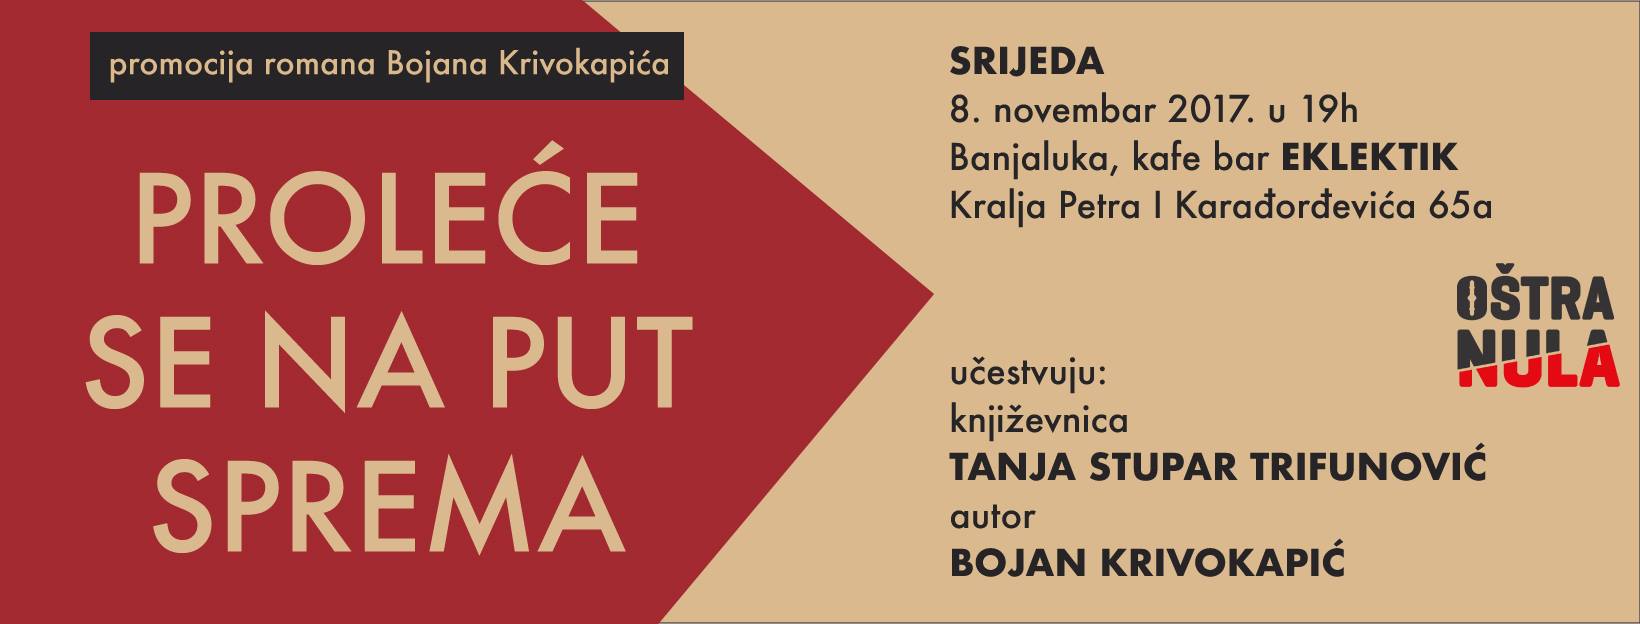 Bojana Krivokapića "Proleće se na put sprema" 08.11.2017. Oštra Nula